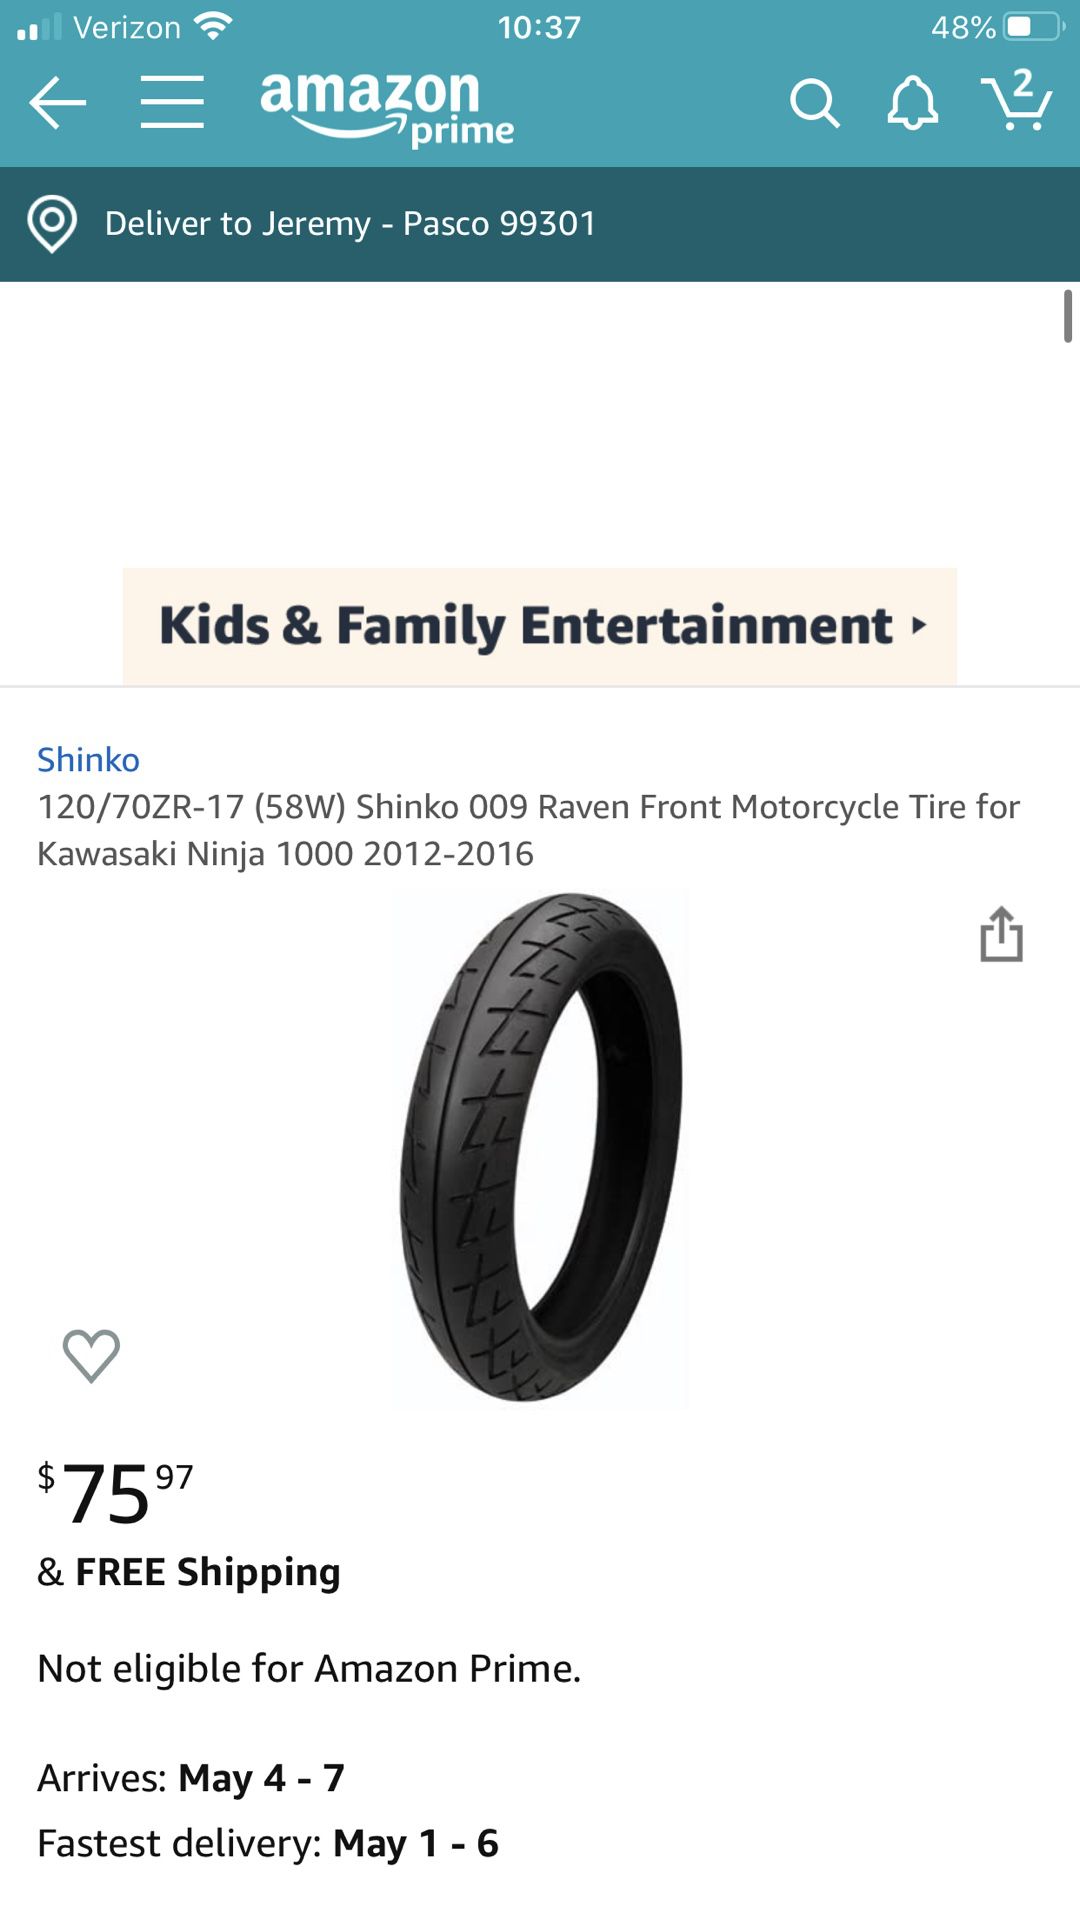 Shinko motorcycle tire